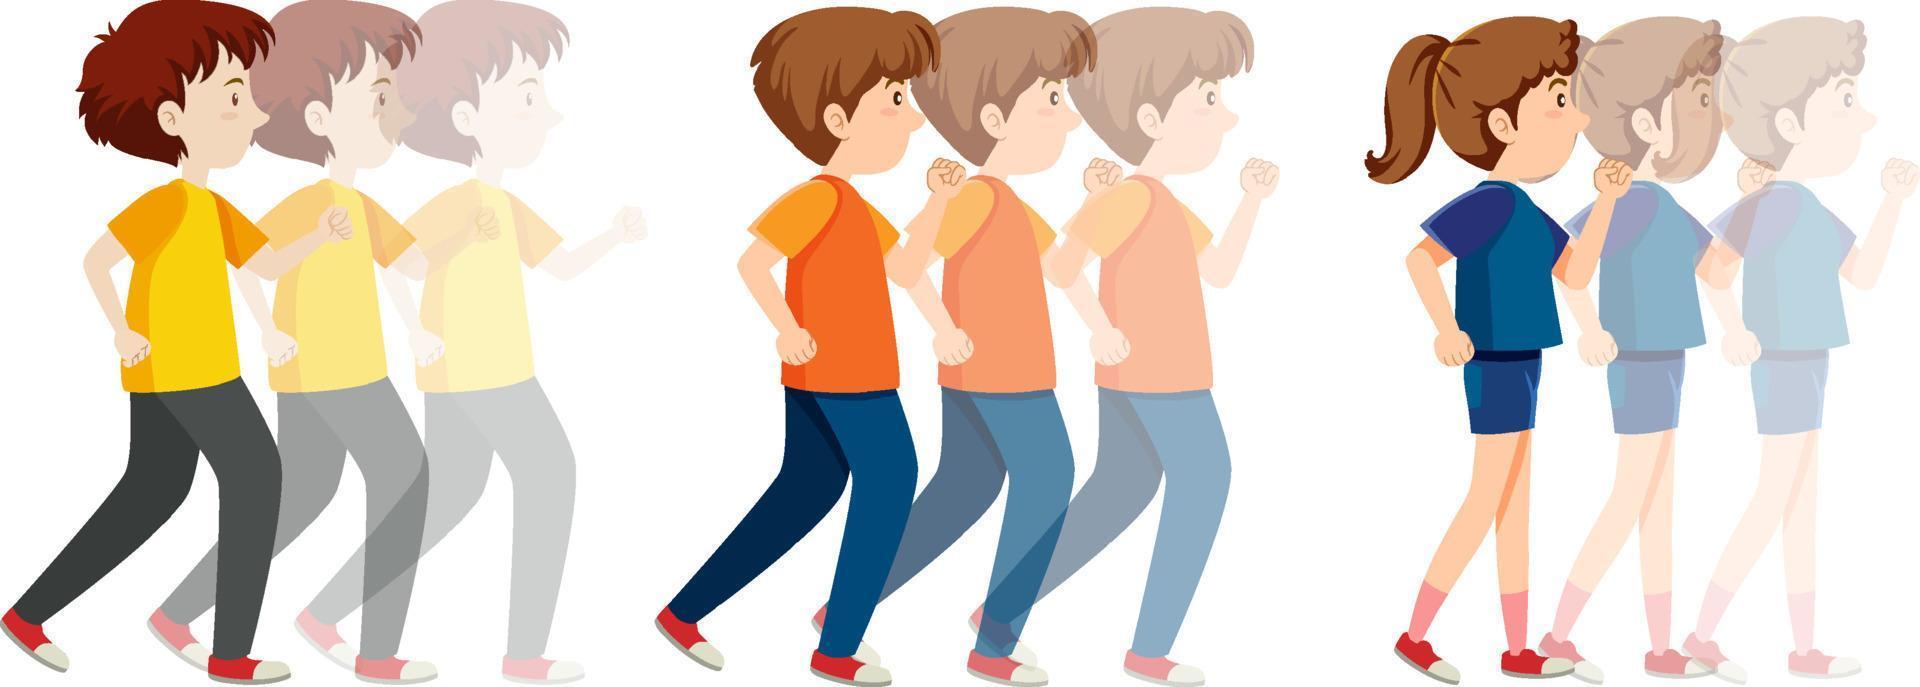 People walking backward cartoon vector